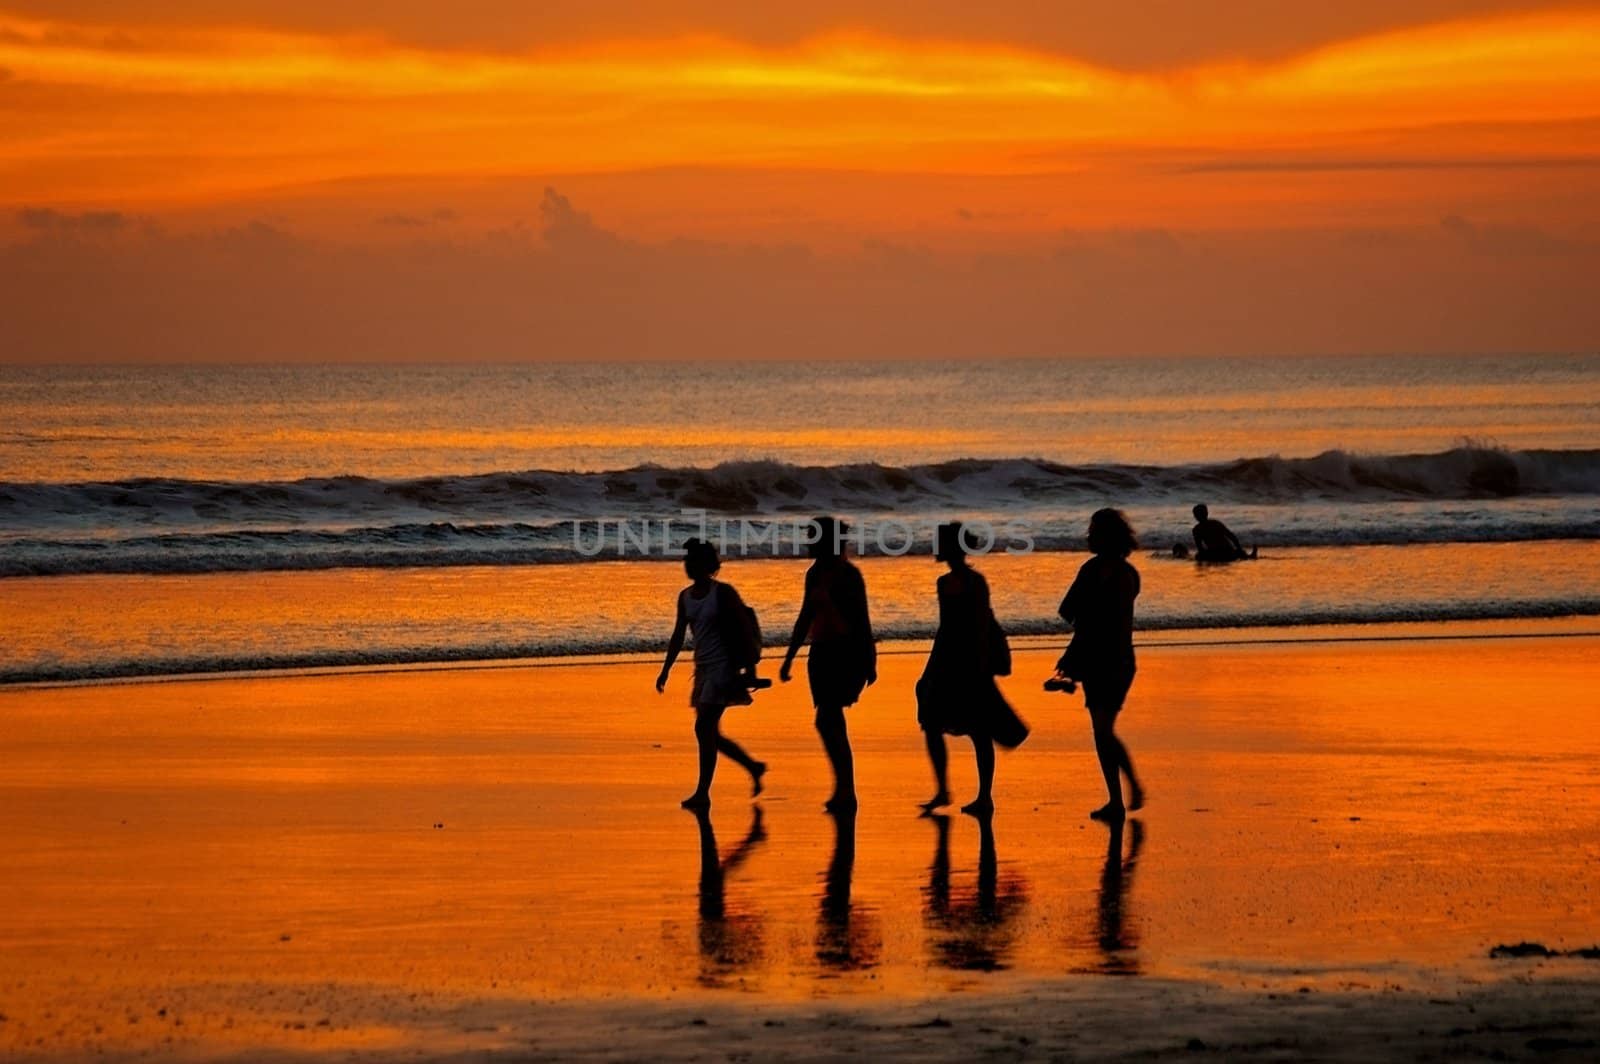 Female backpackers taking a stroll on Double Six beach, Seminyak, Bali, Indonesia.